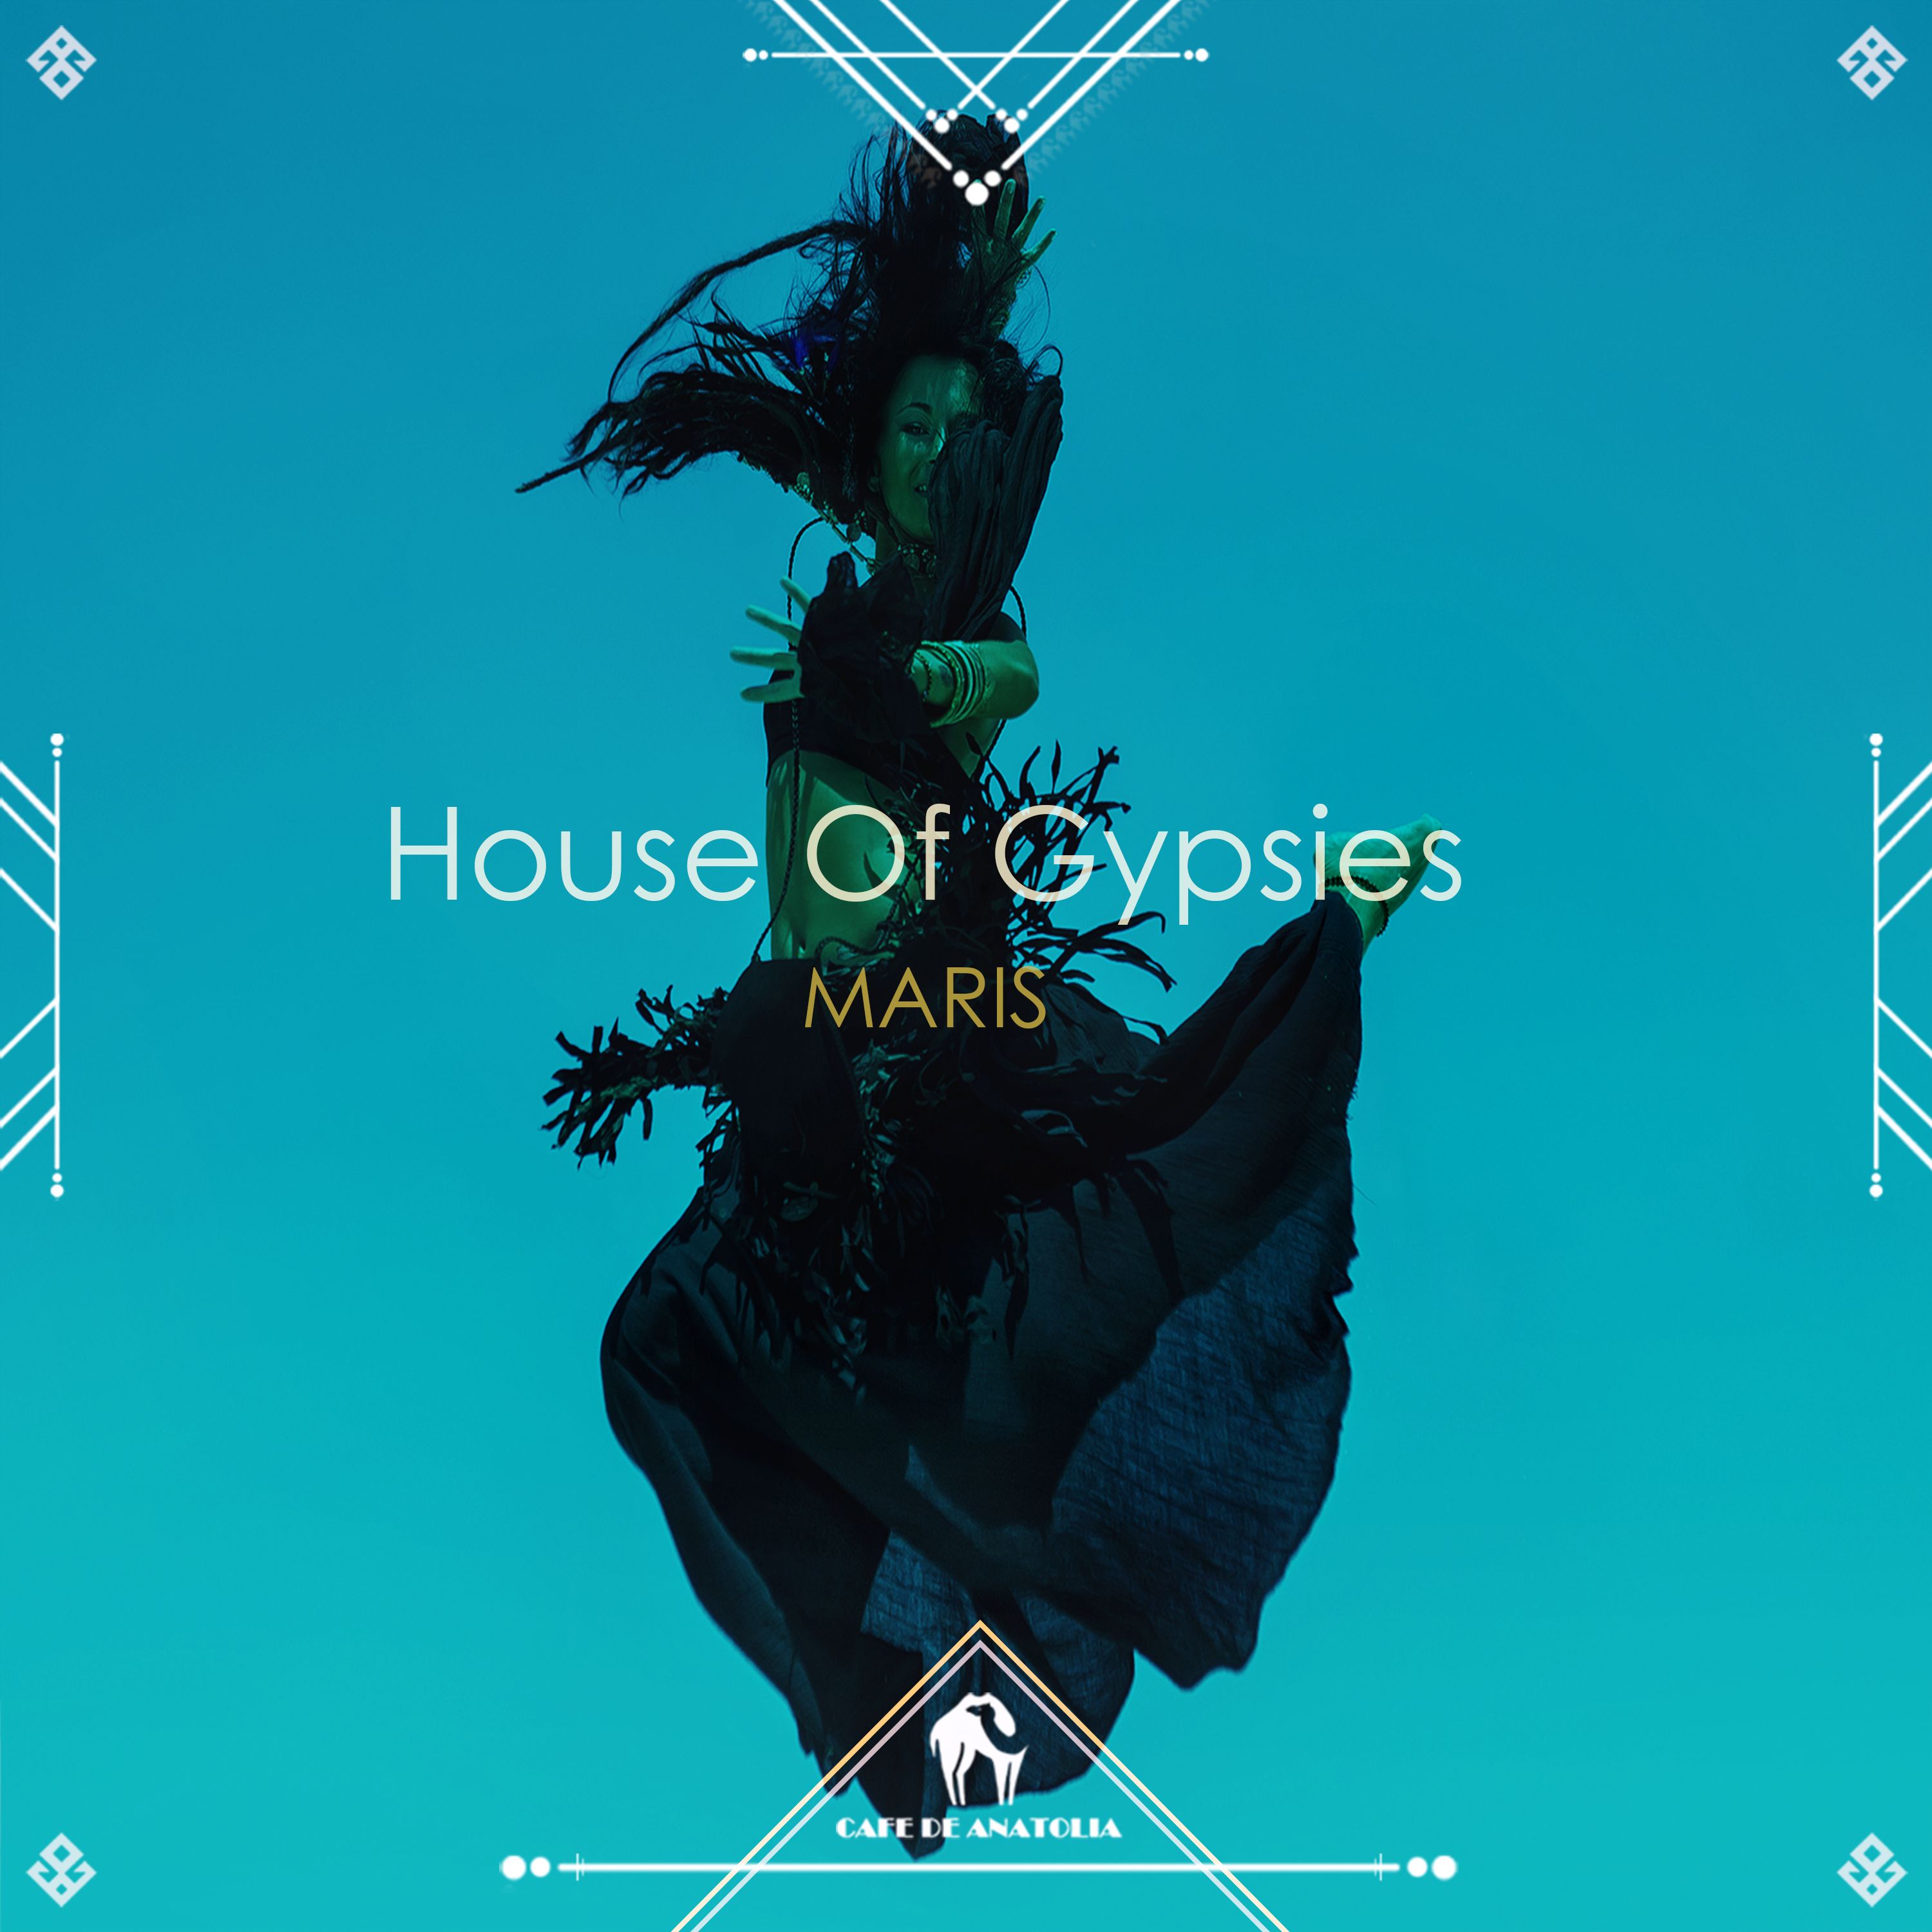 Maris - House Of Gypsies (Radio Mix) [Cafe De Anatolia]